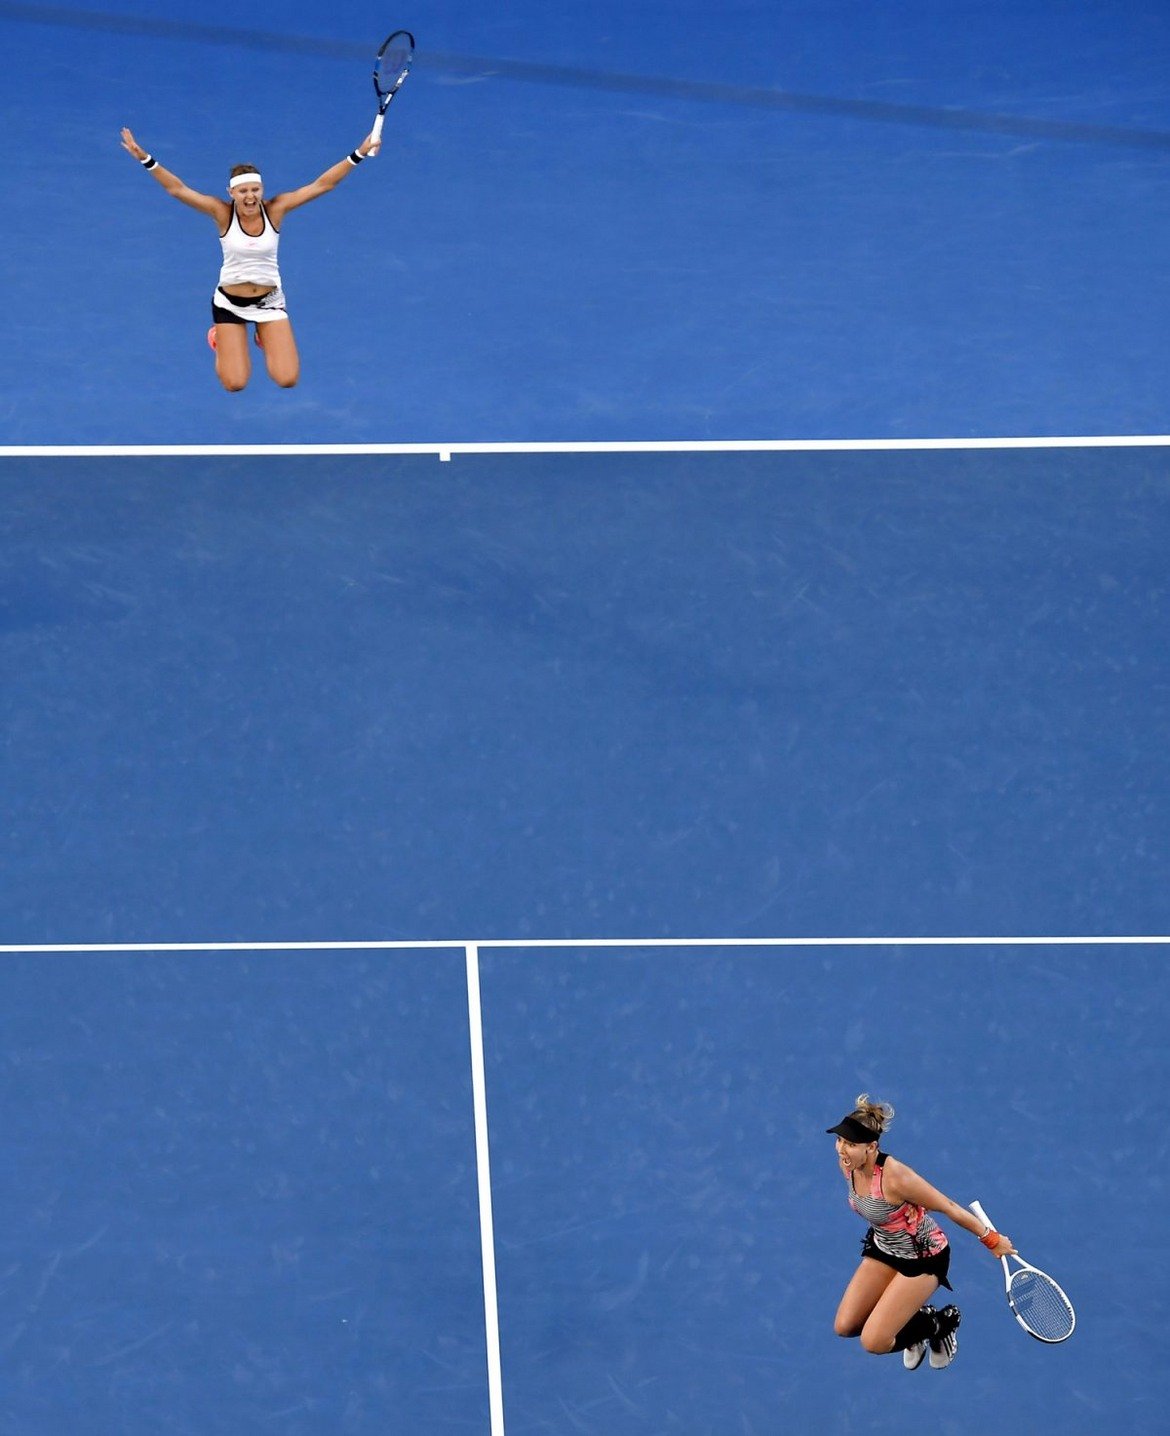 Те са две от най-лъчезарните момичета на женския тенис. Луцие Шафаржова е в близост до основната линия, а Бетани Матек-Сандс е на мрежата. Общото между двете е, че са във въздуха и че току-що заедно са завоювали титлата от Australian Open на двойки. А ако знаете какъв танц имаше след награждаването...